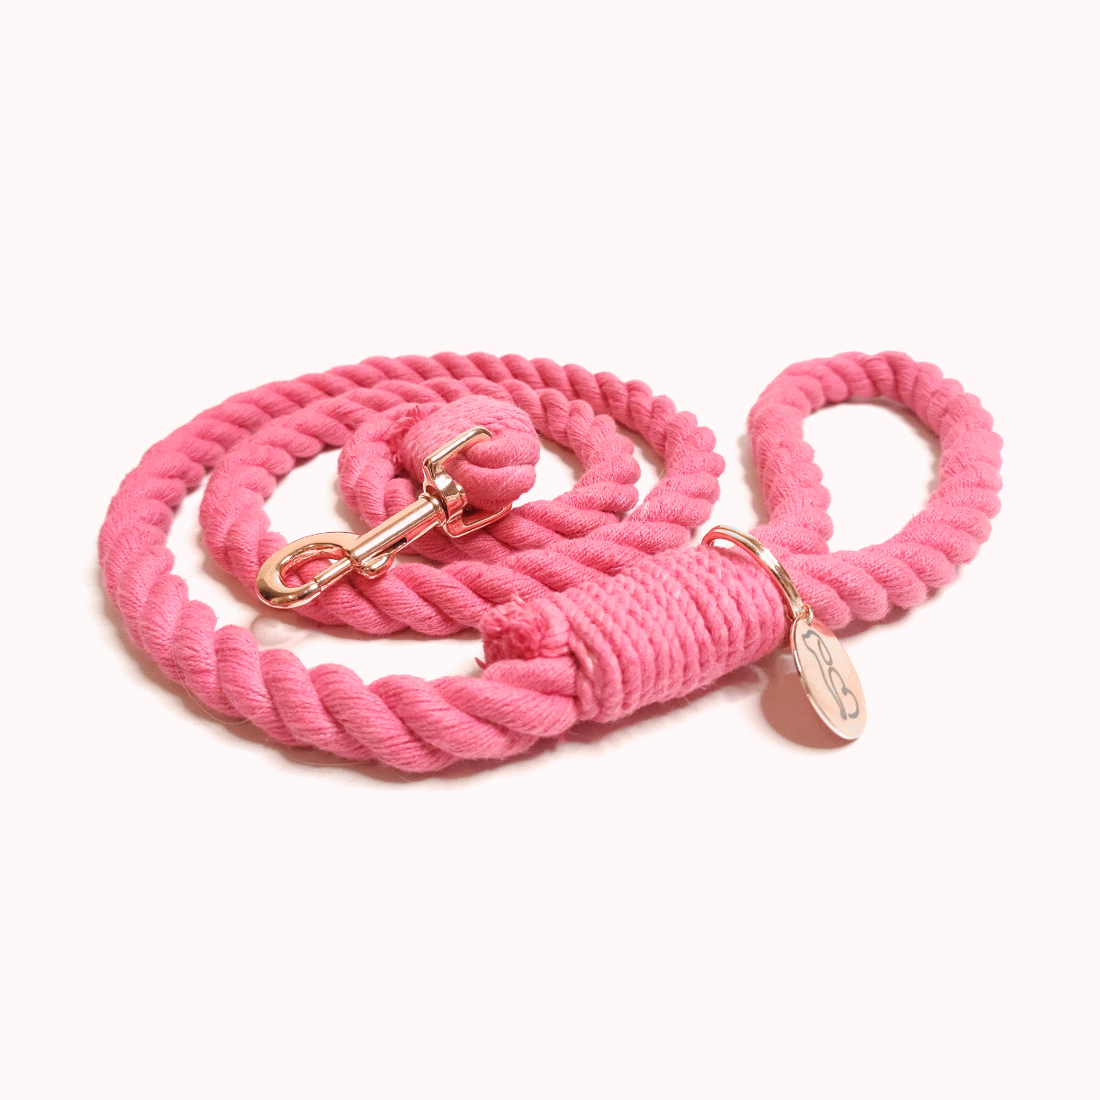 Flamingo leash